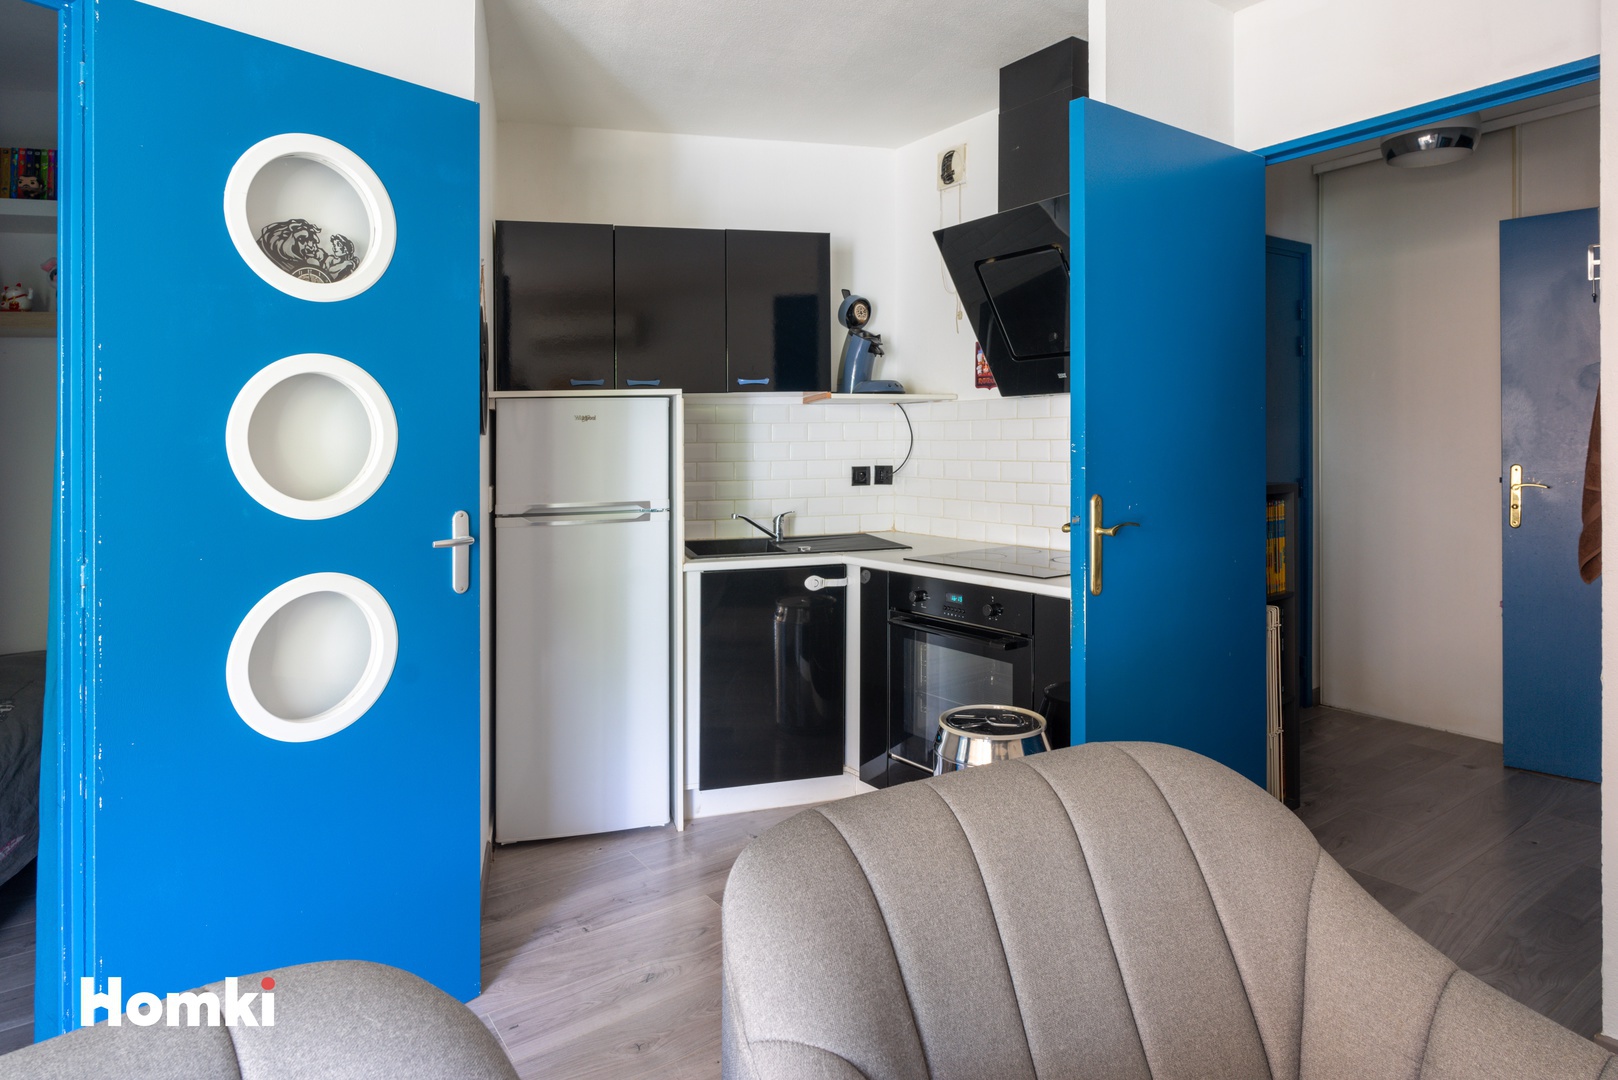 Homki - Vente Appartement  de 33.0 m² à Marseille 13010